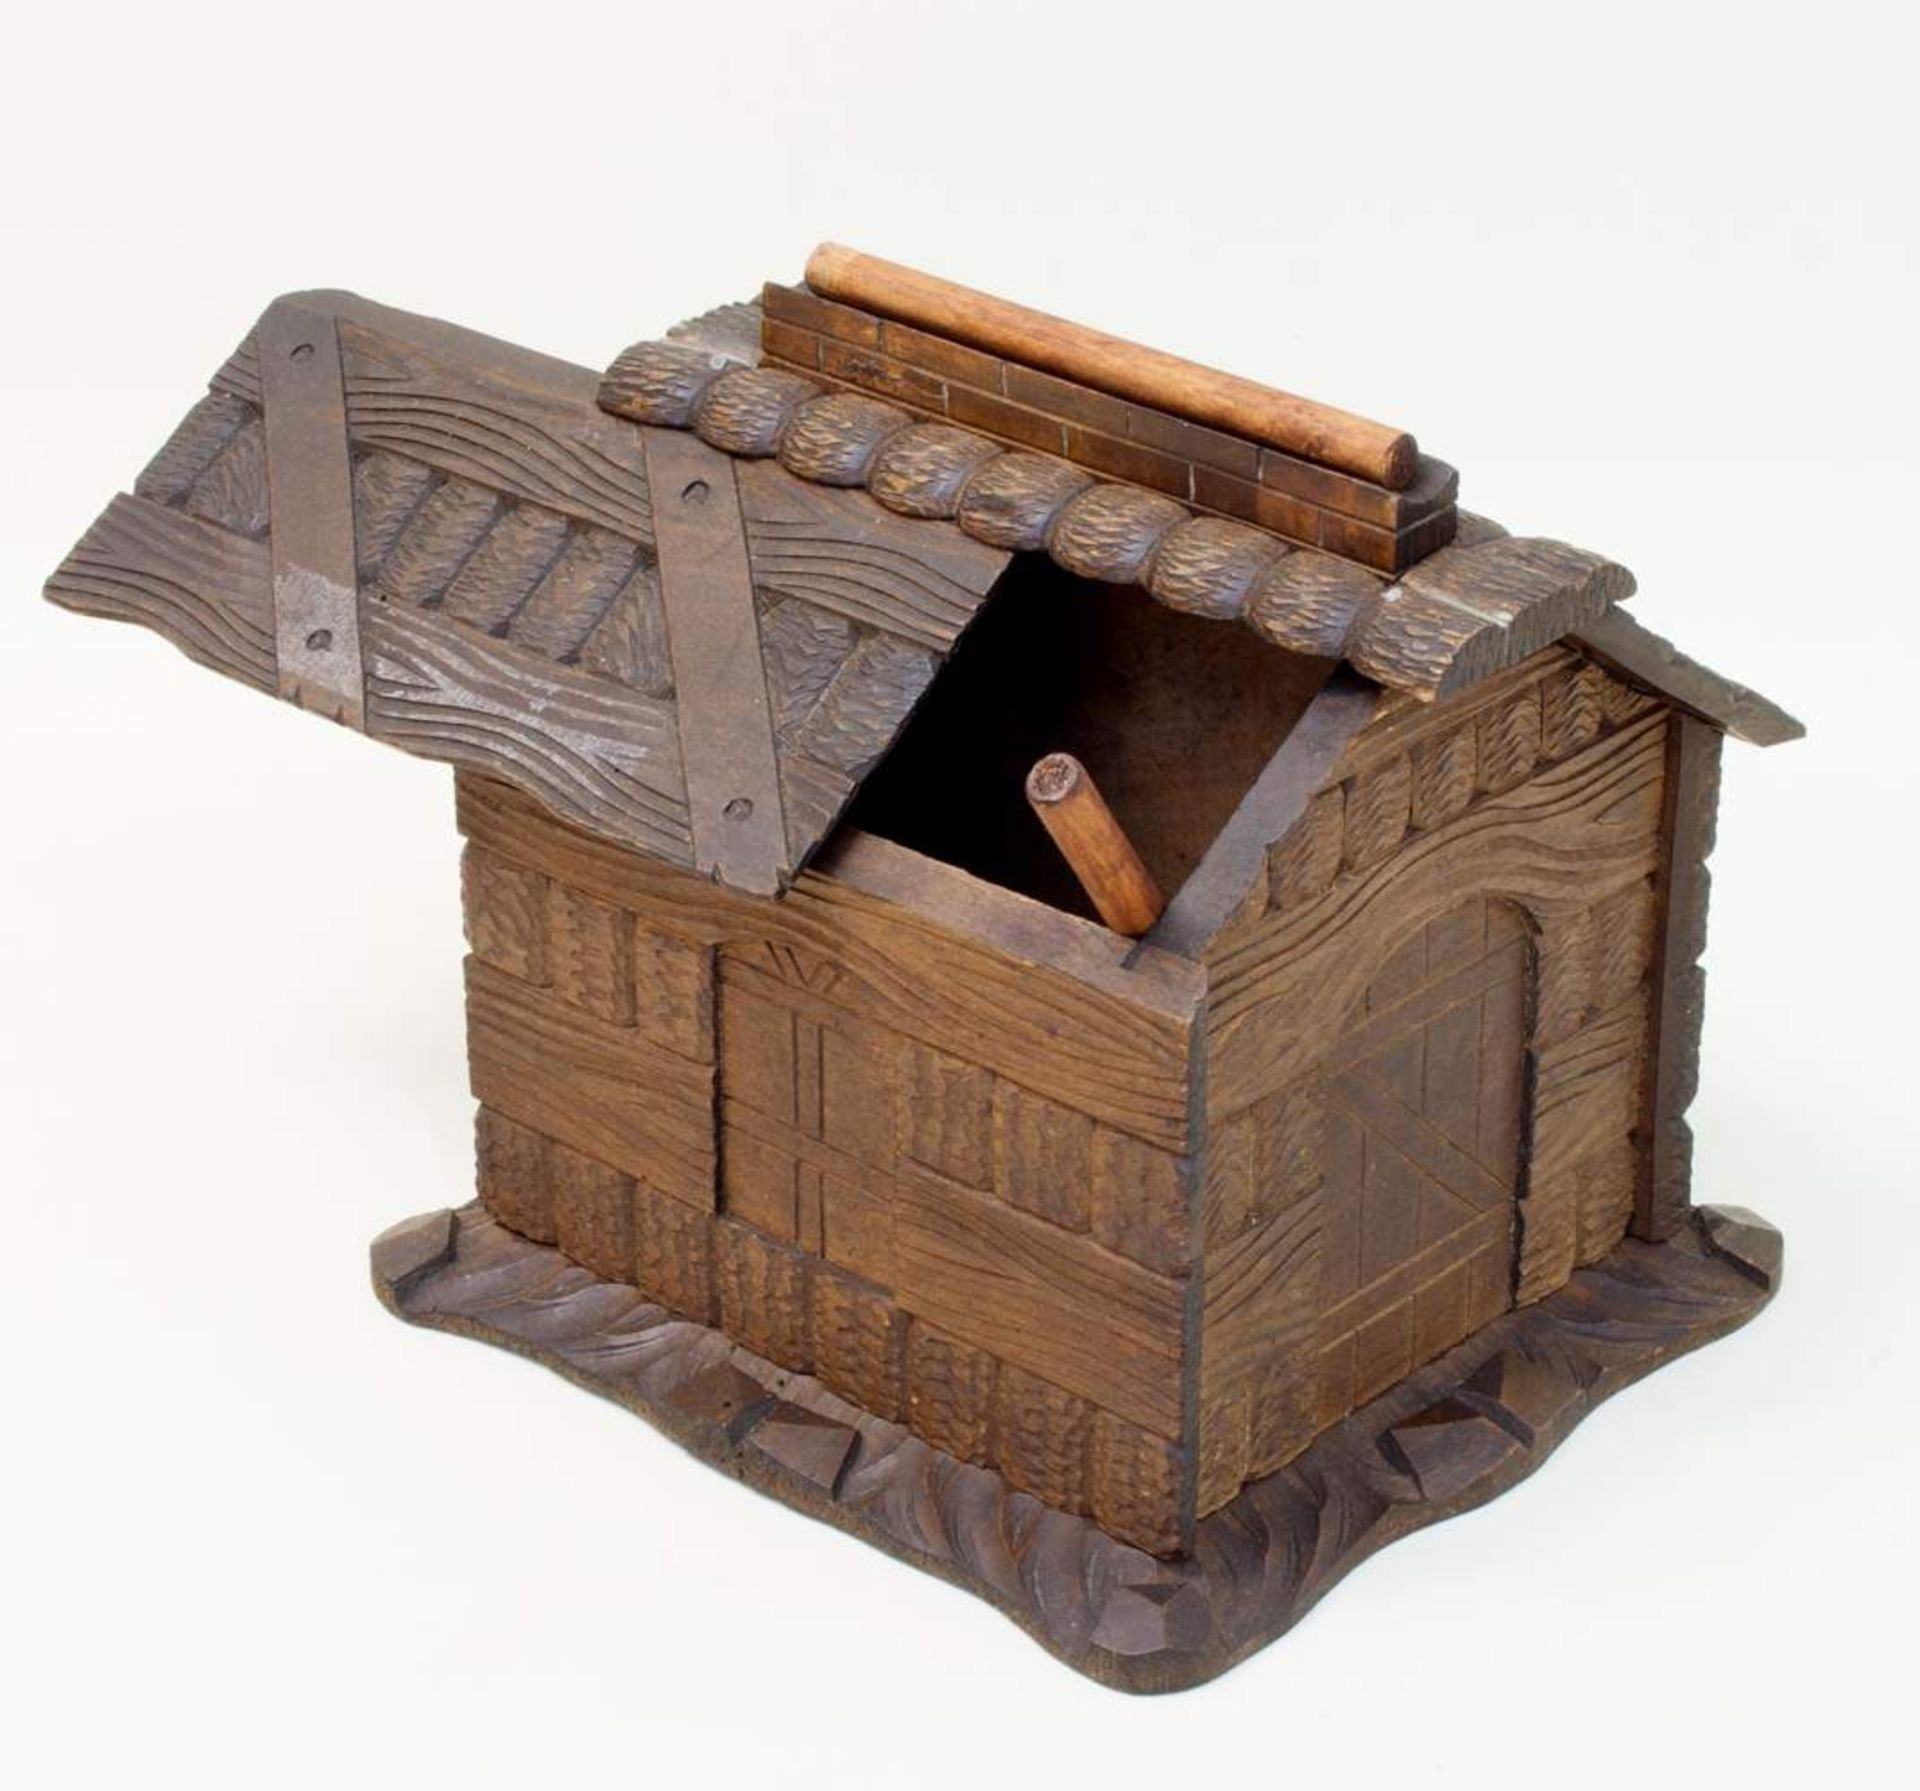 ZigarrenspenderFinnland Anfang 20. Jh., in Form einer Blockhütte, Holz beschnitzt, für Zigarren/ - Bild 2 aus 2